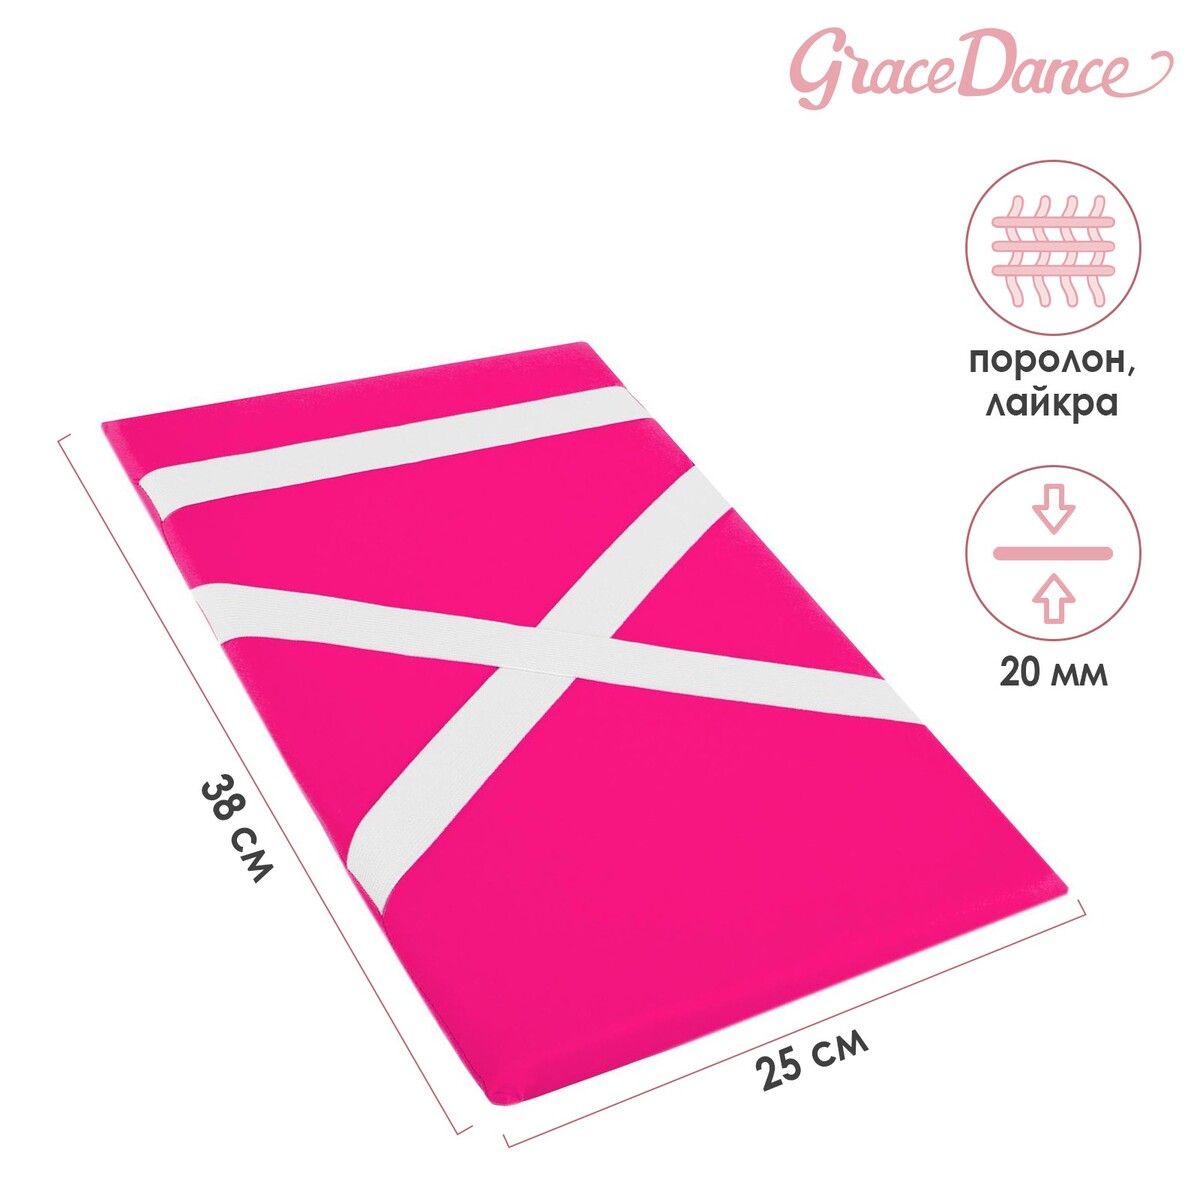 Наспинник для гимнастики и танцев grace dance, 38х25 см, цвет фуксия